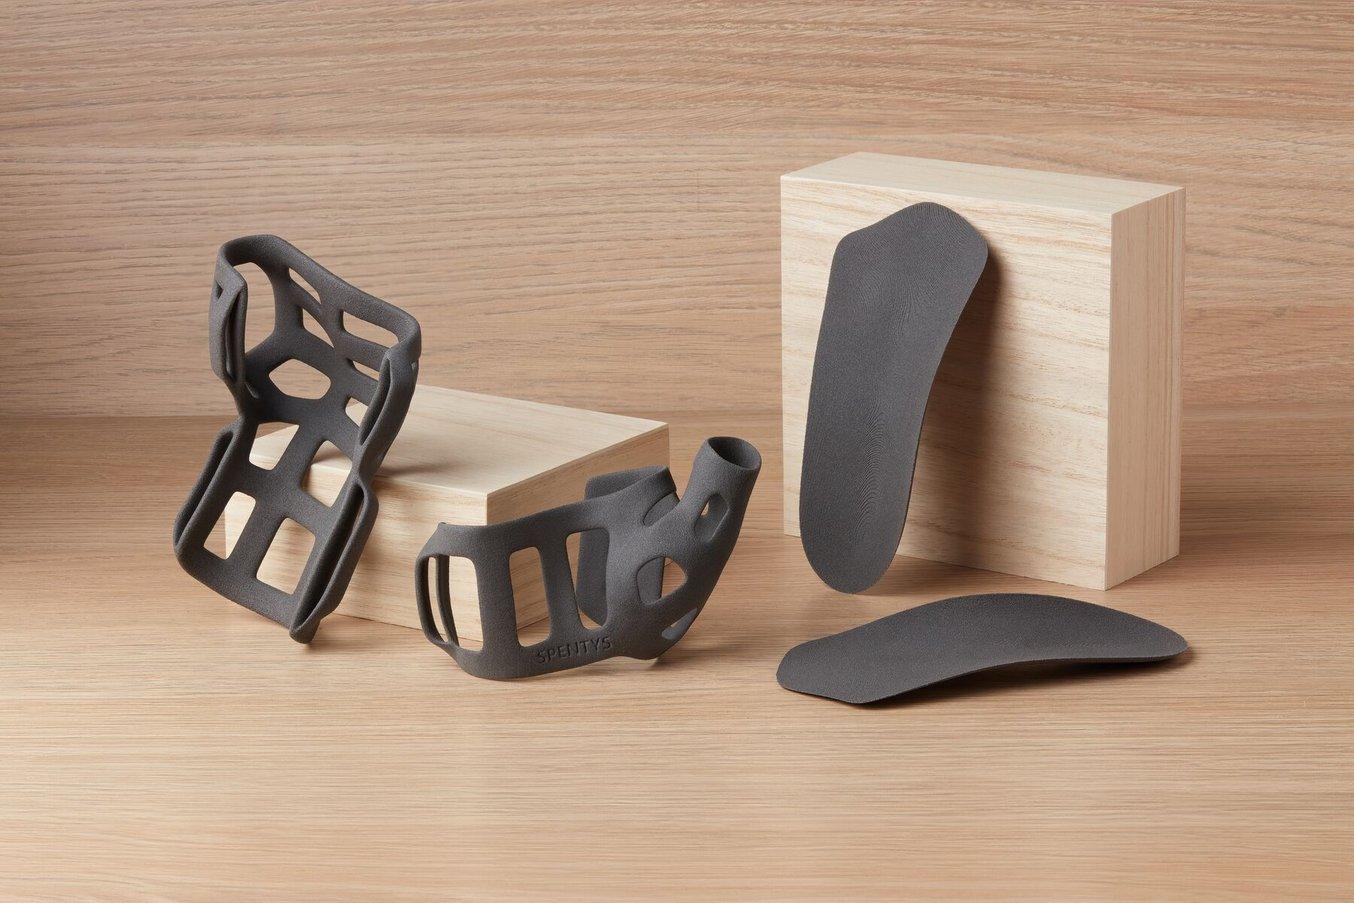 dispositifs médicaux imprimés en 3D sur un fond en bois, une attelle de pouce et des orthèses imprimées en 3D